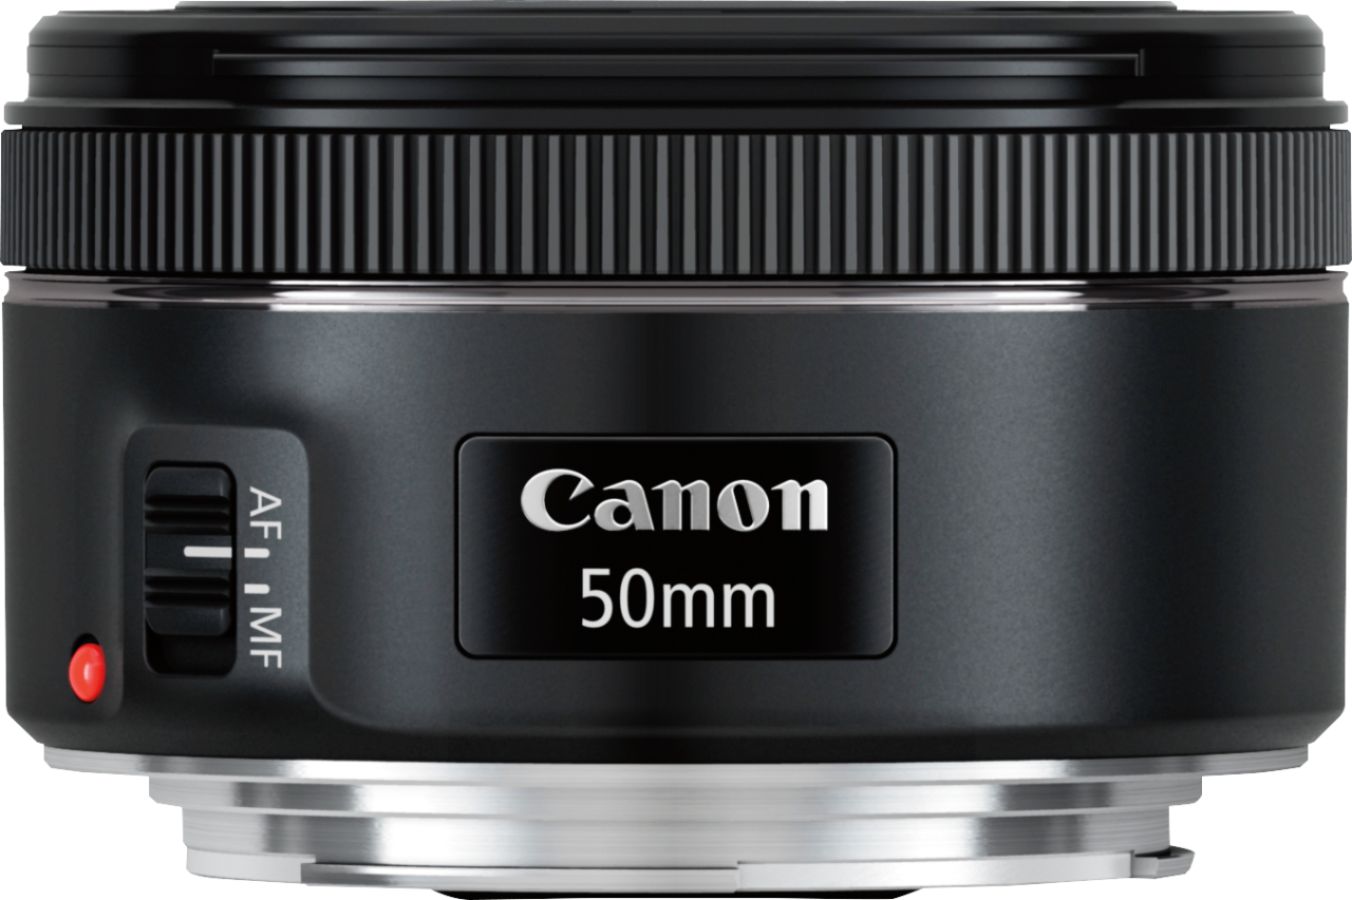 Canon EF50mm F1.8 STM Standard Cameras Lens 0570C002 EOS Black Best Buy for Prime - DSLR